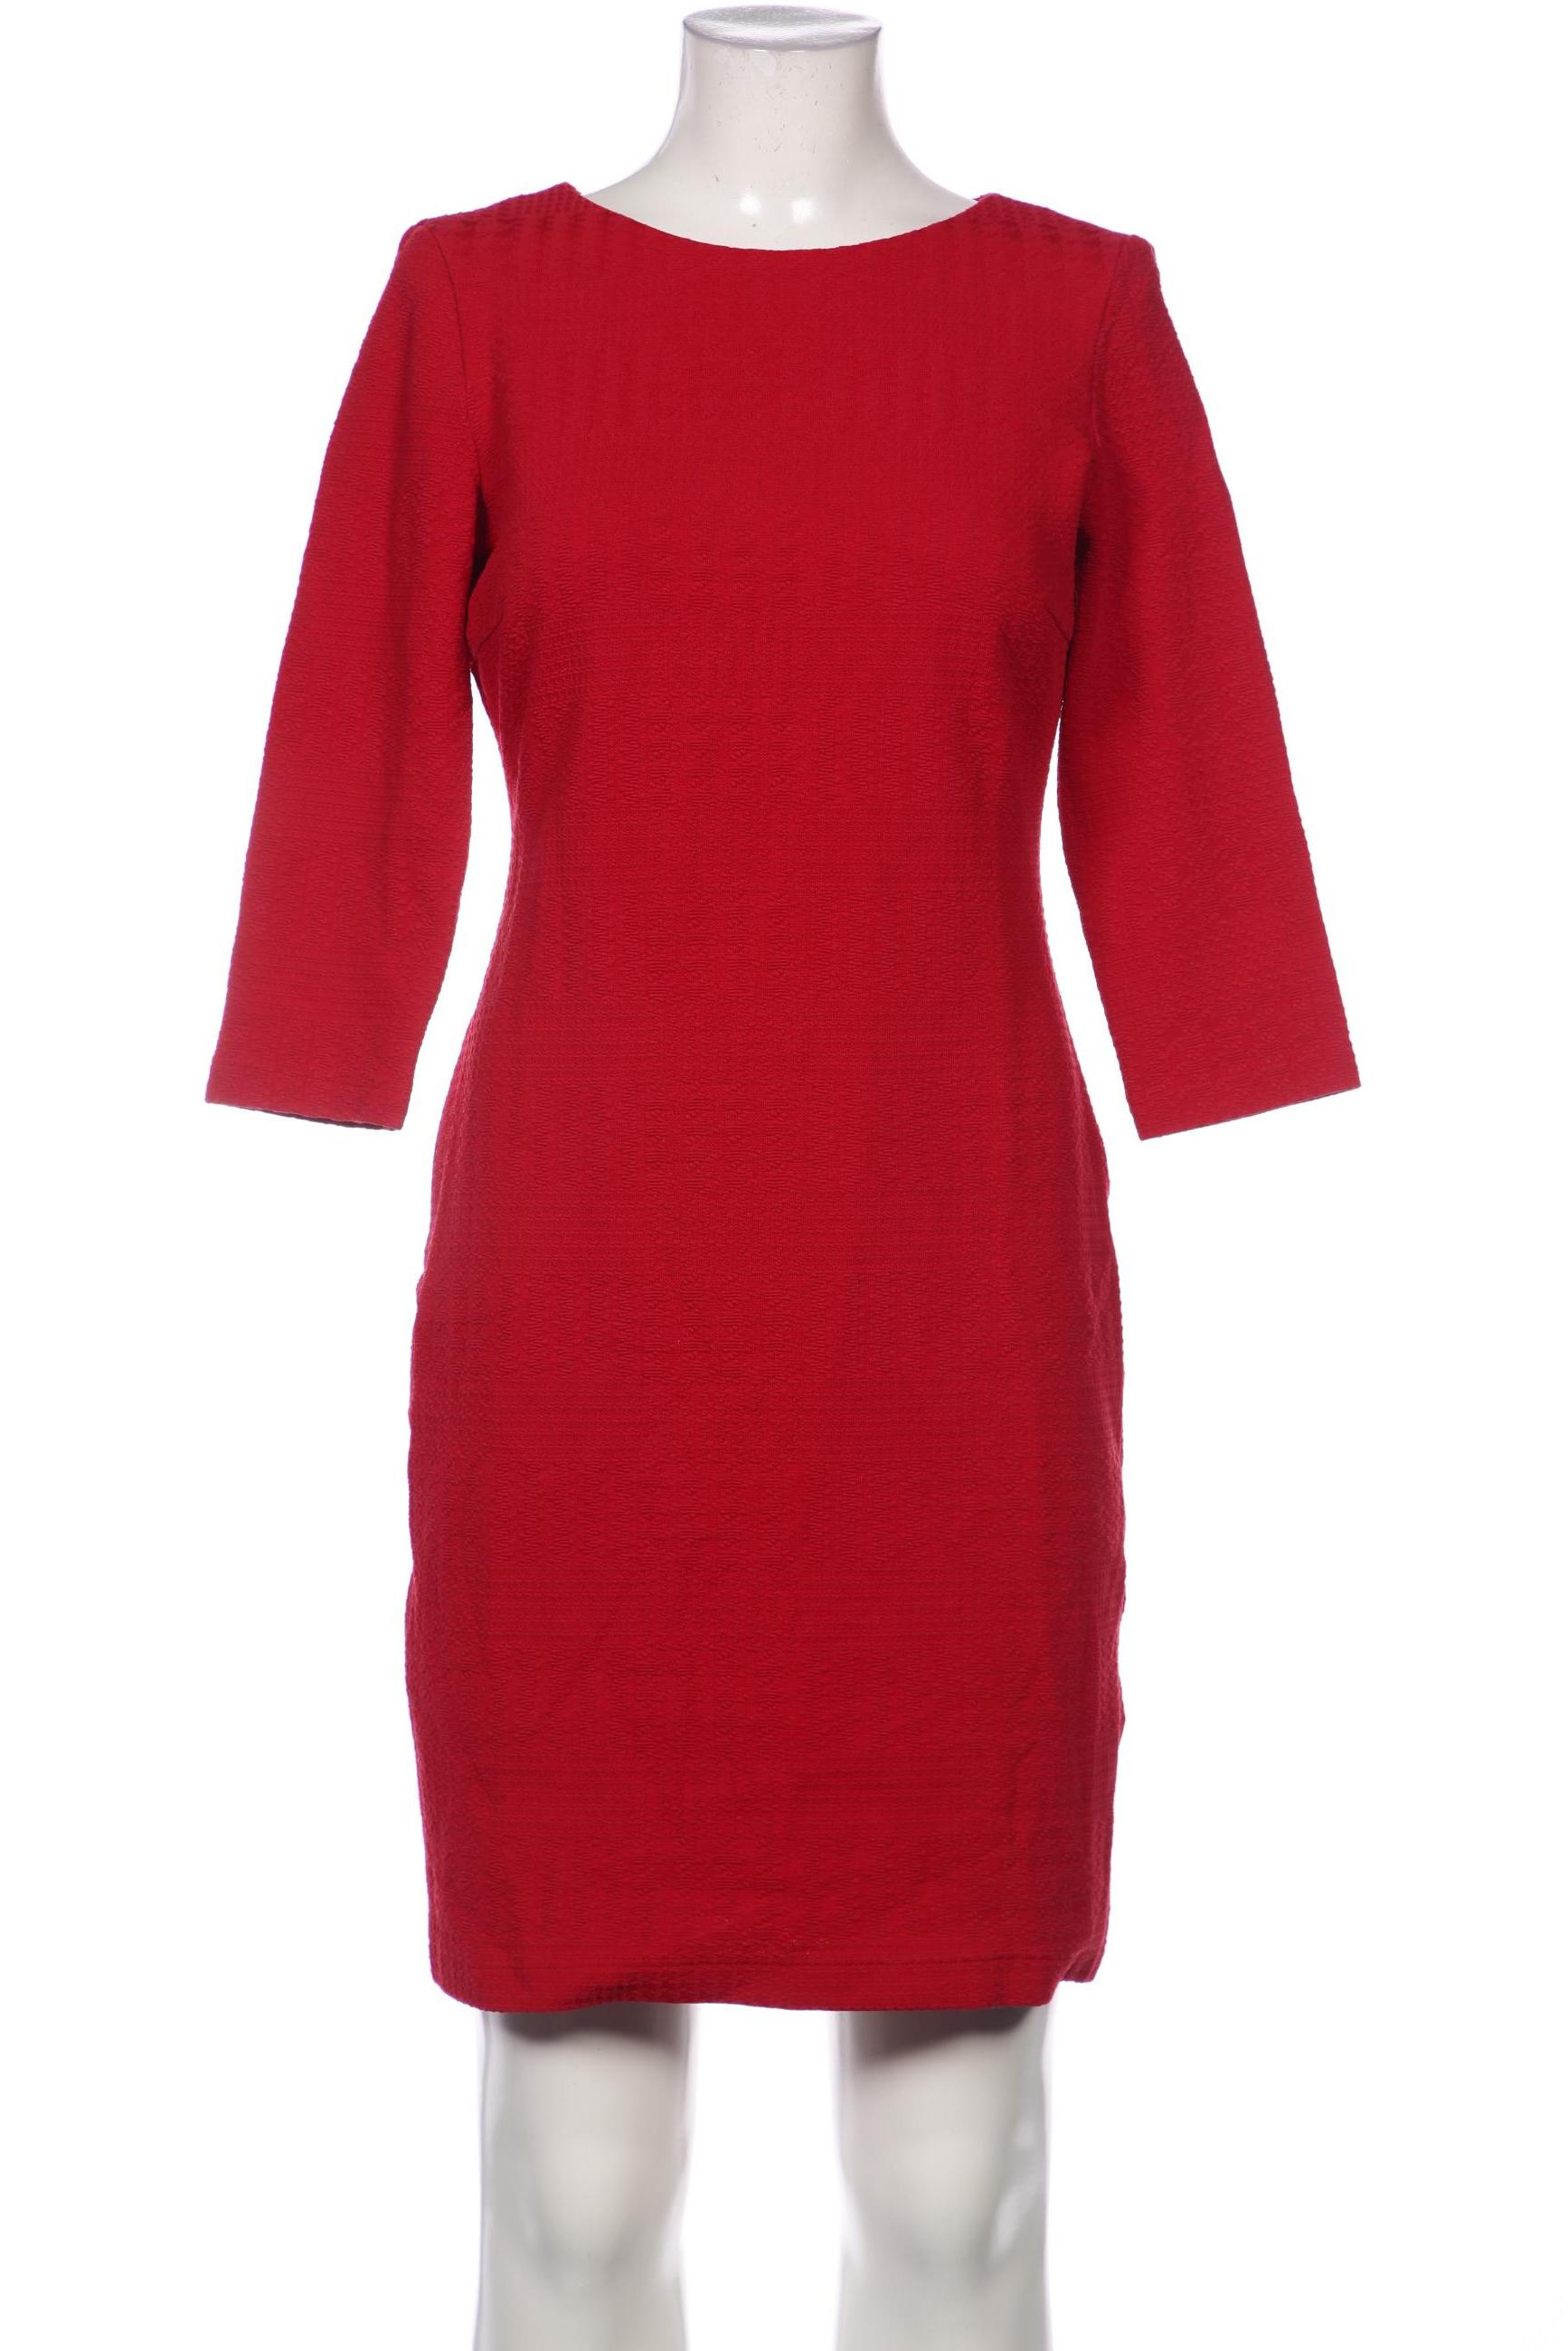 Montego Damen Kleid, rot von montego